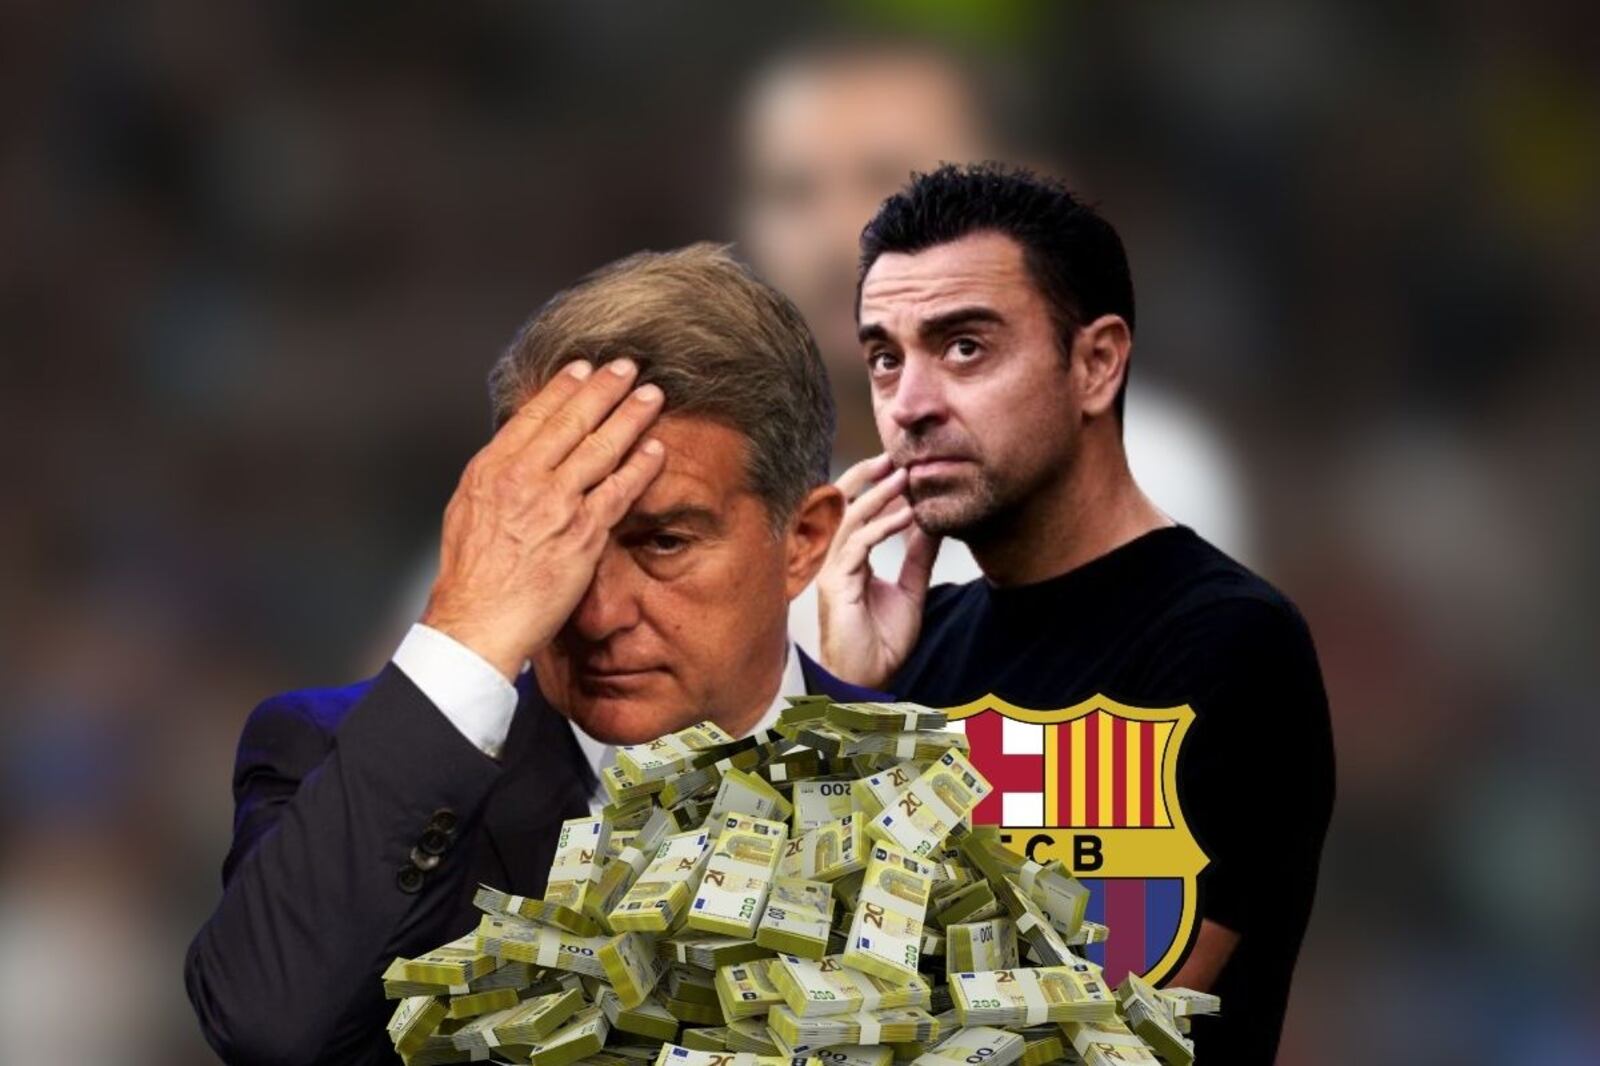 El FC Barcelona sufre, un jugador que echó se iría a la Premier por 20 millones